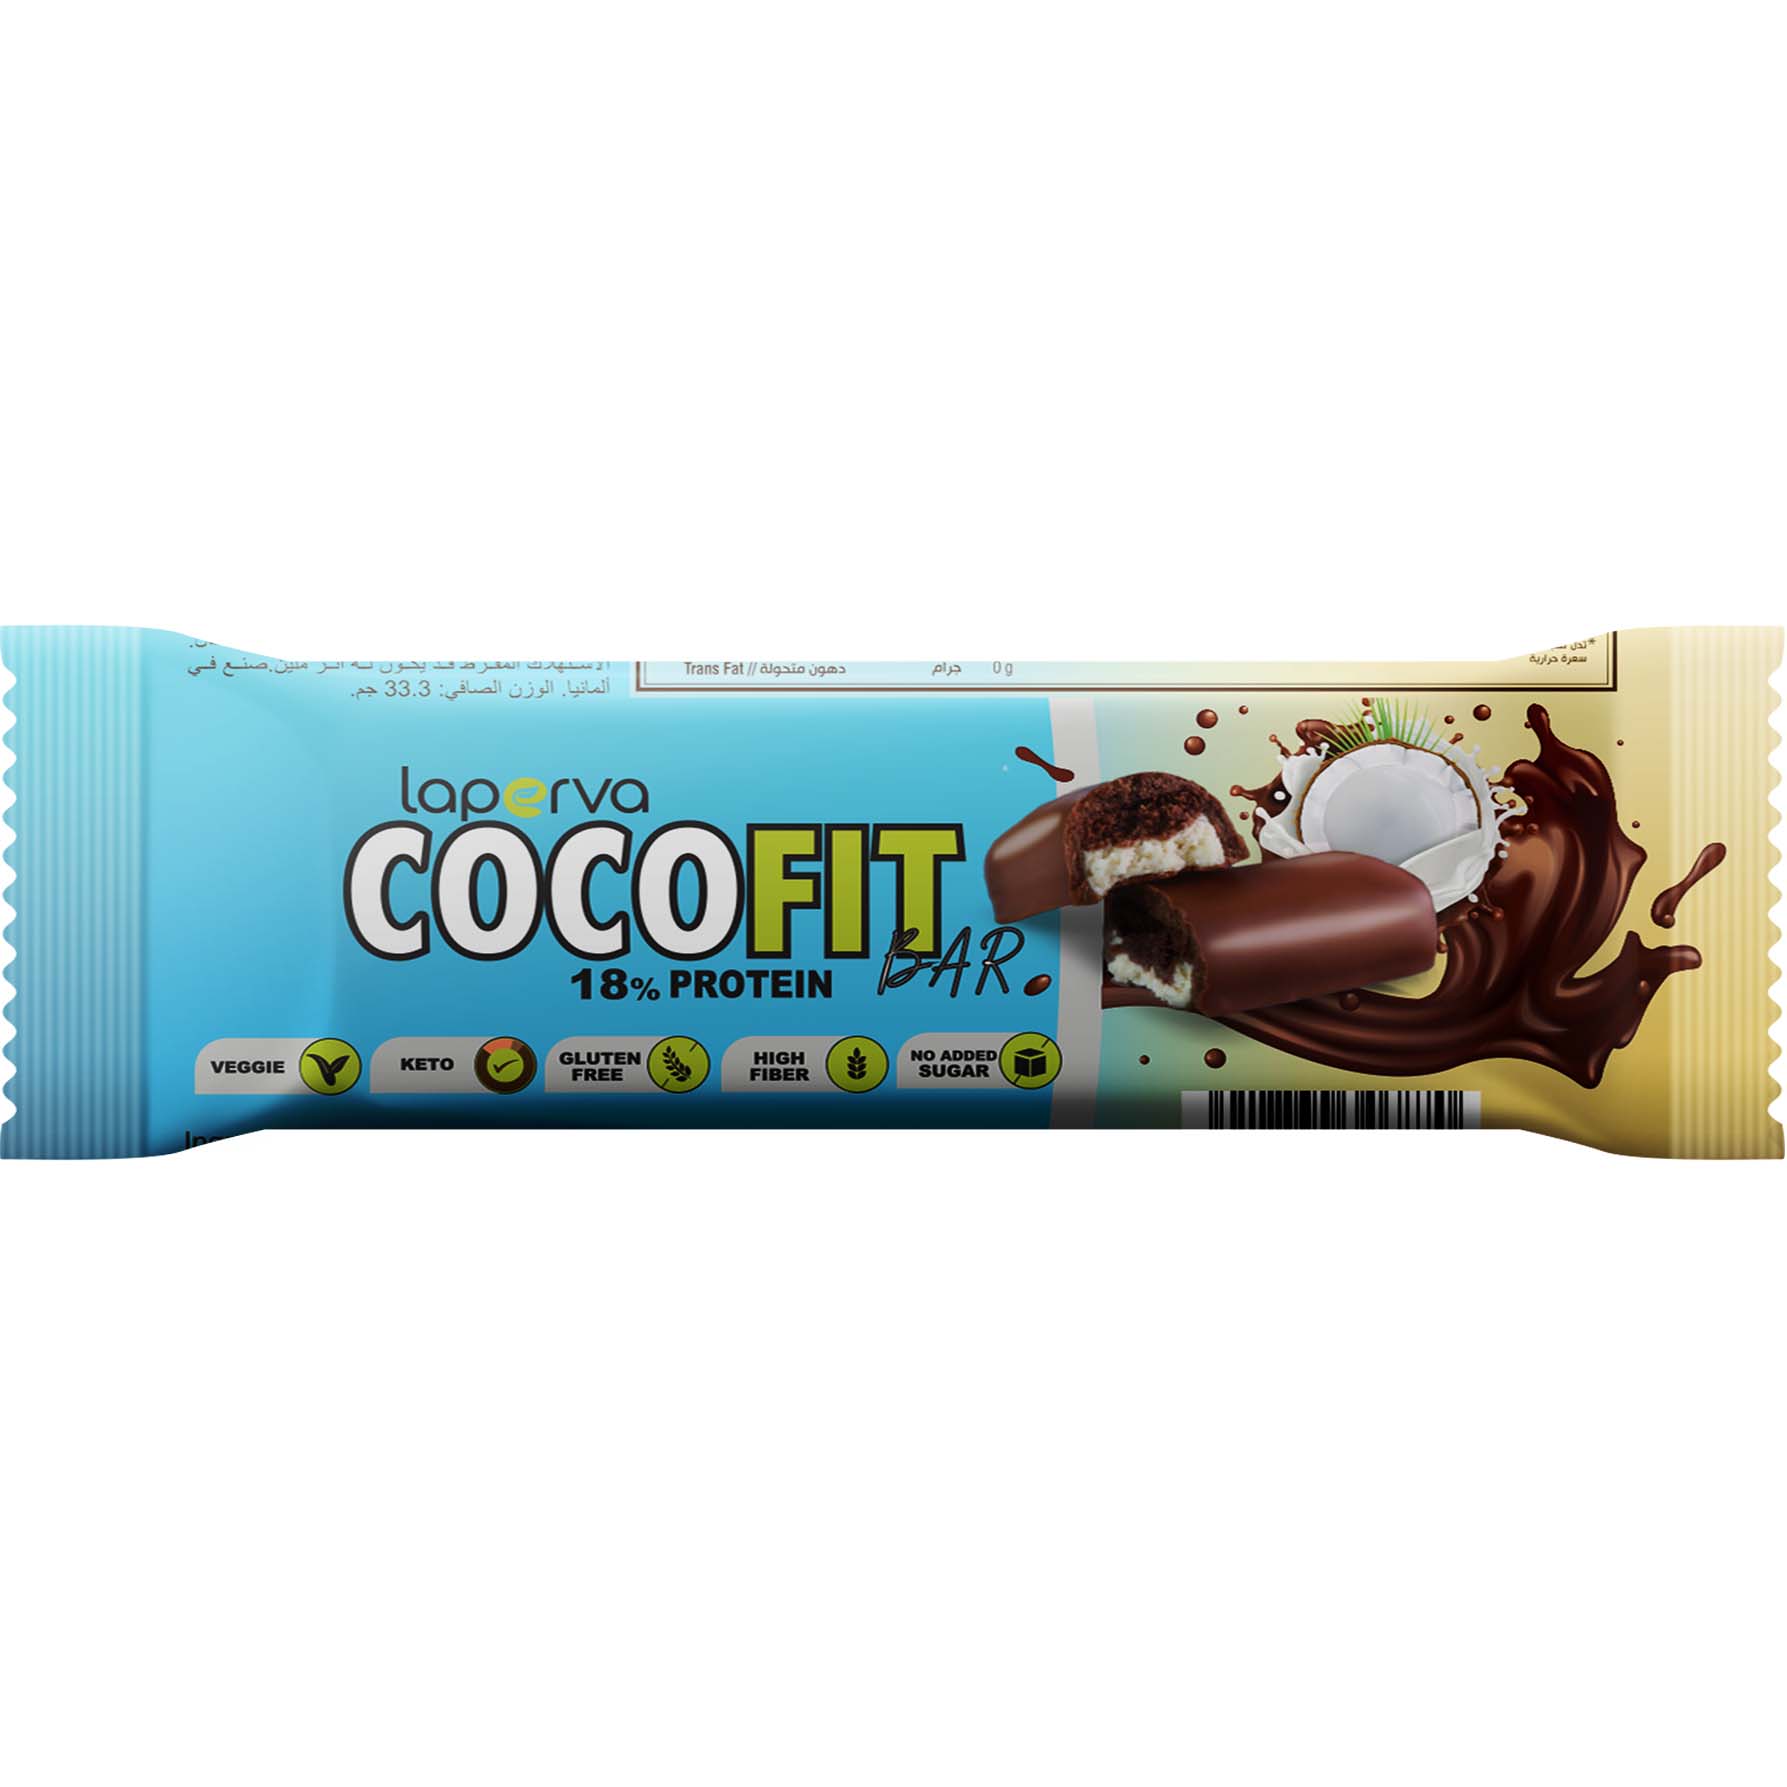 Laperva Coco Fit Bar, 1 Bar